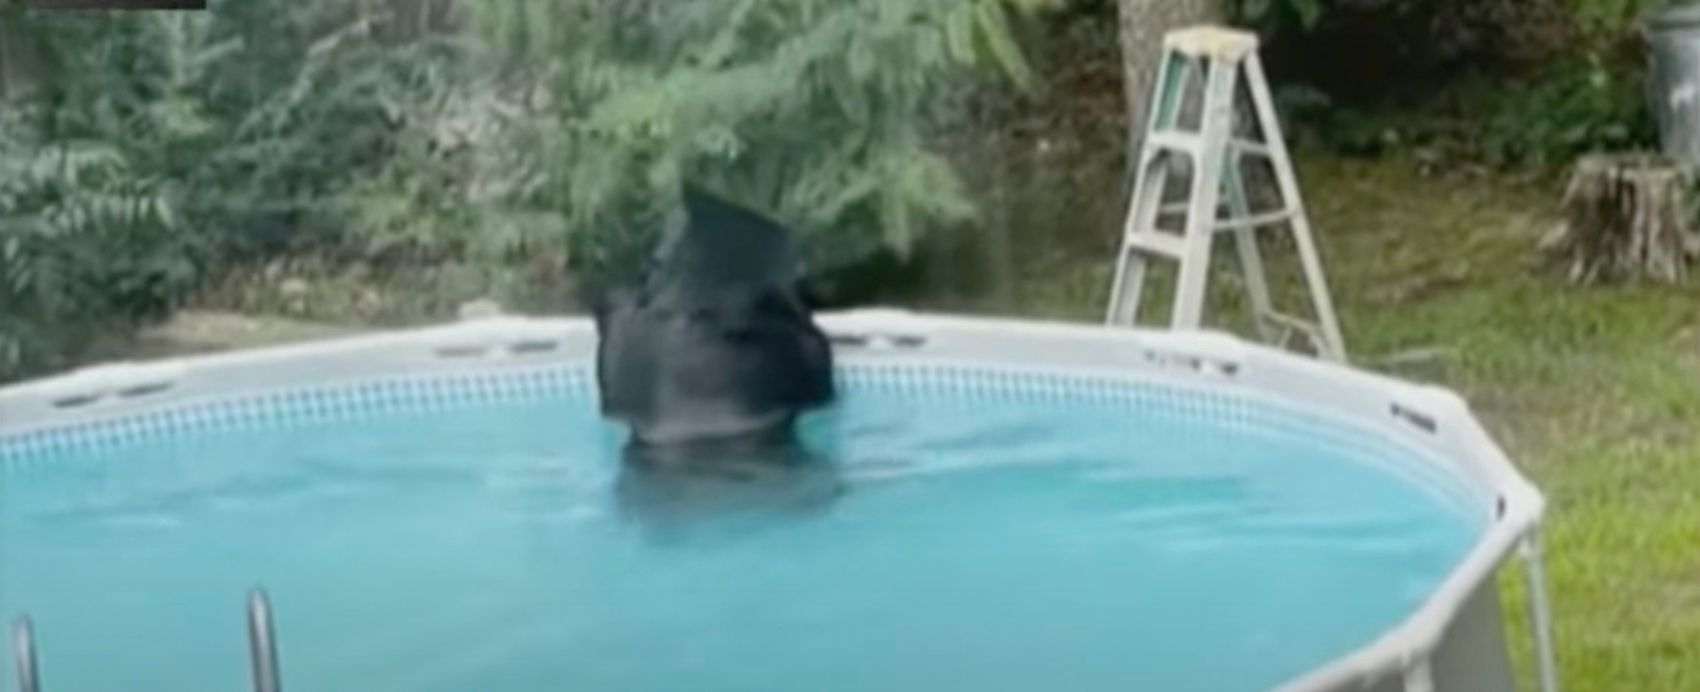 Медведь решил освежиться в чужом бассейне